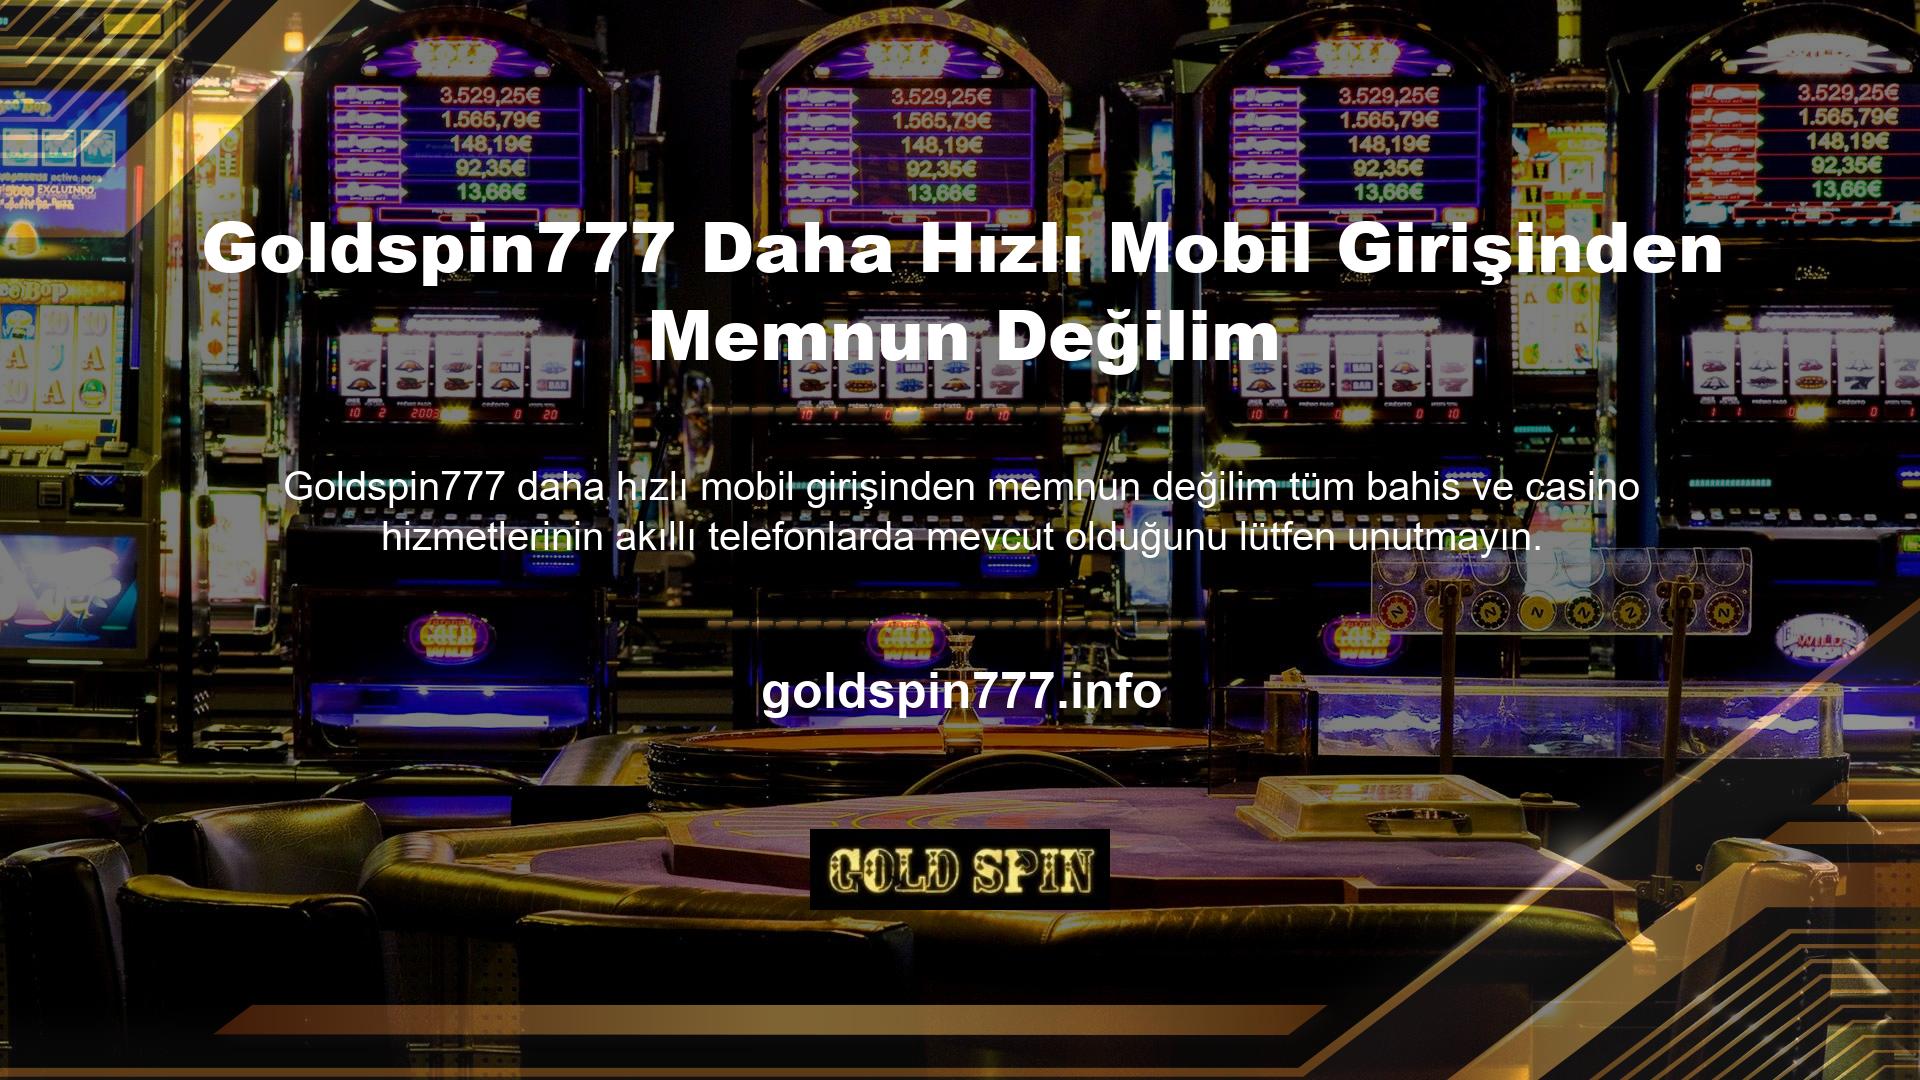 Goldspin777 Şikayet mobil üyelik işlemi için üç seçeneğe sahiptir